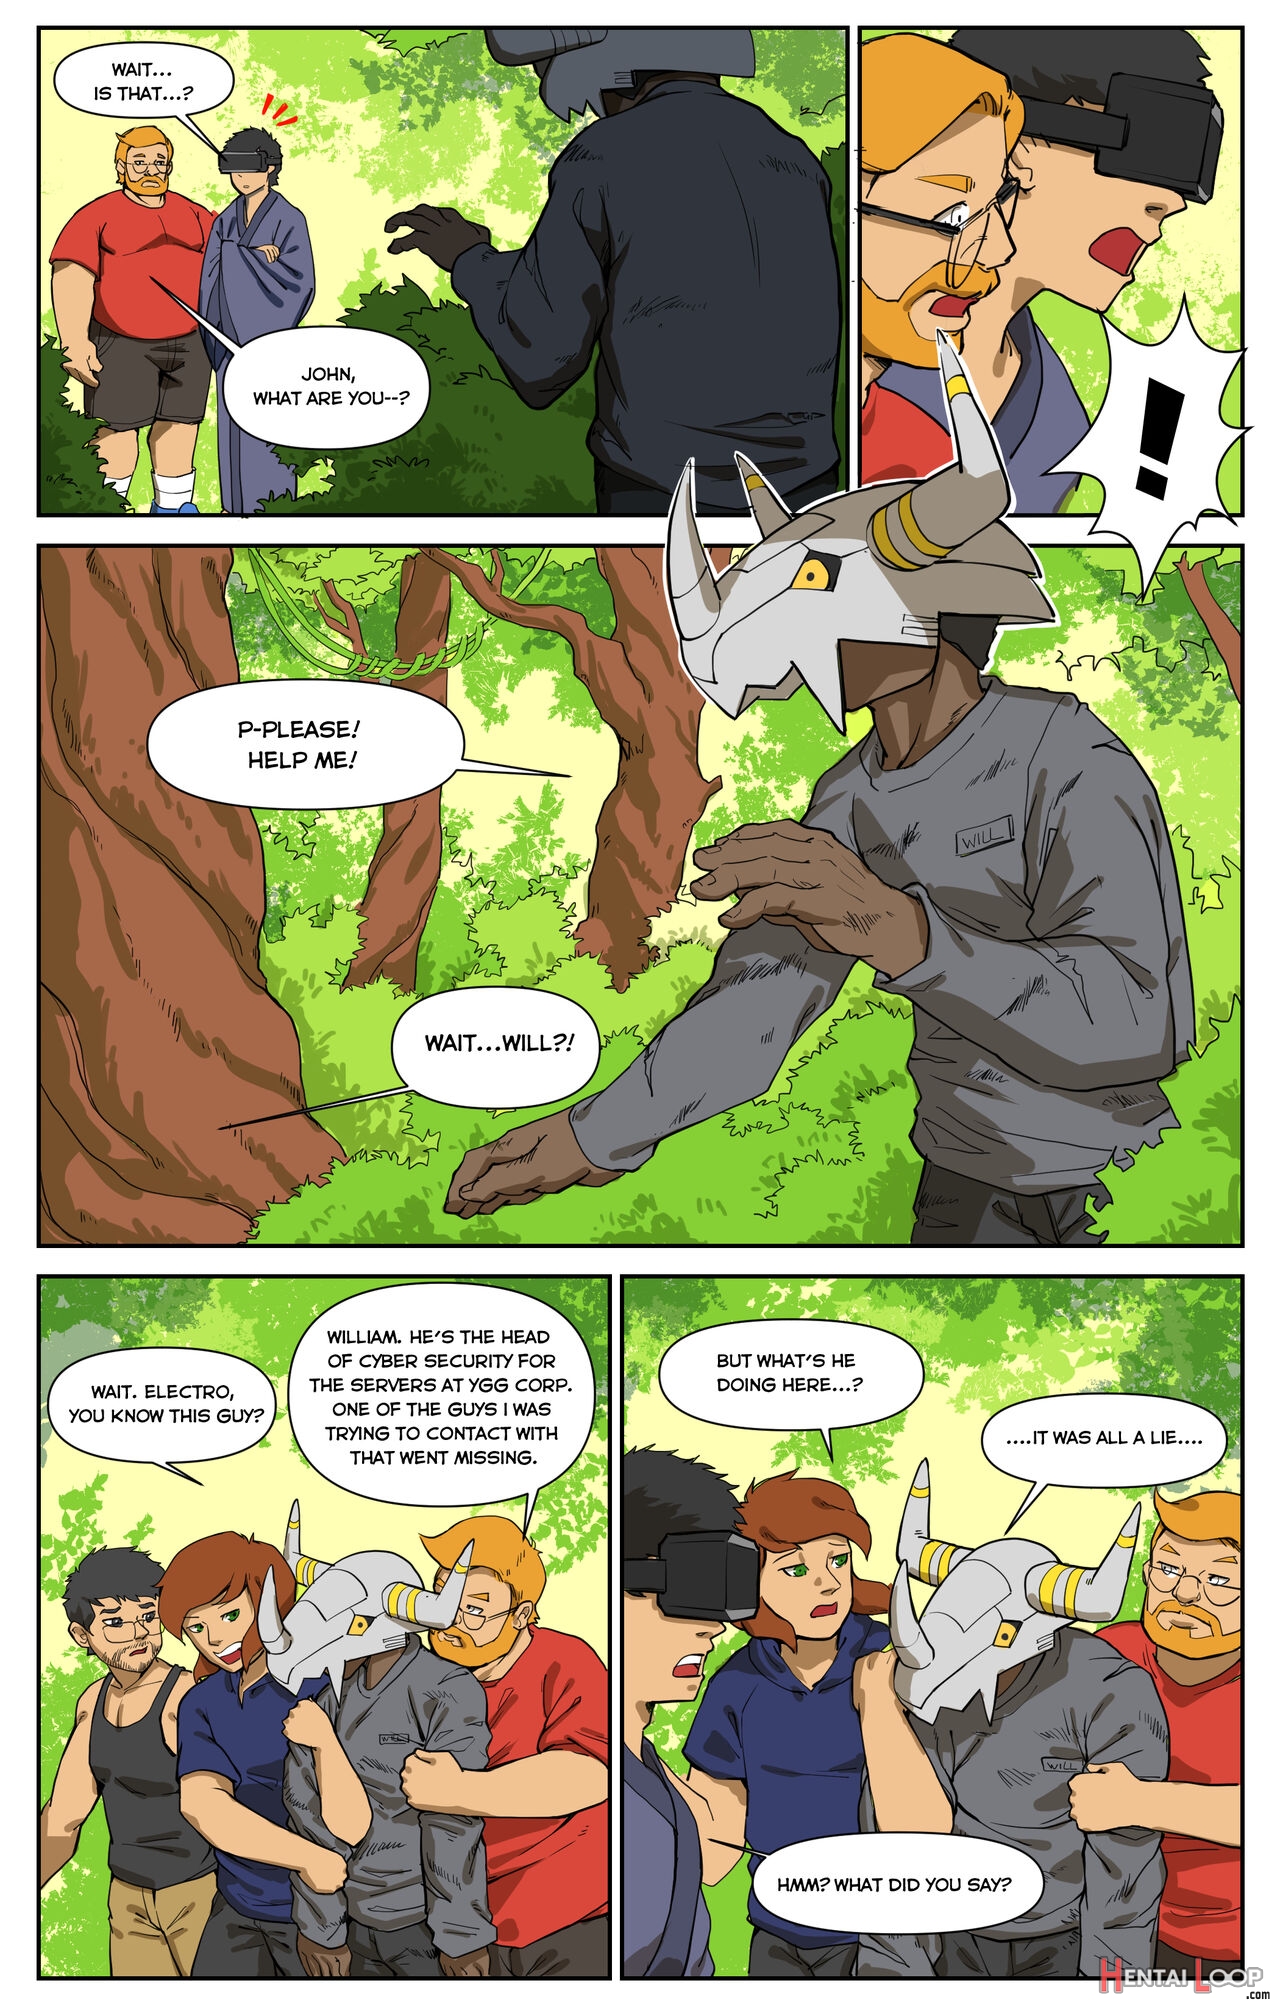 Digital Mayhem By Pandarita page 10